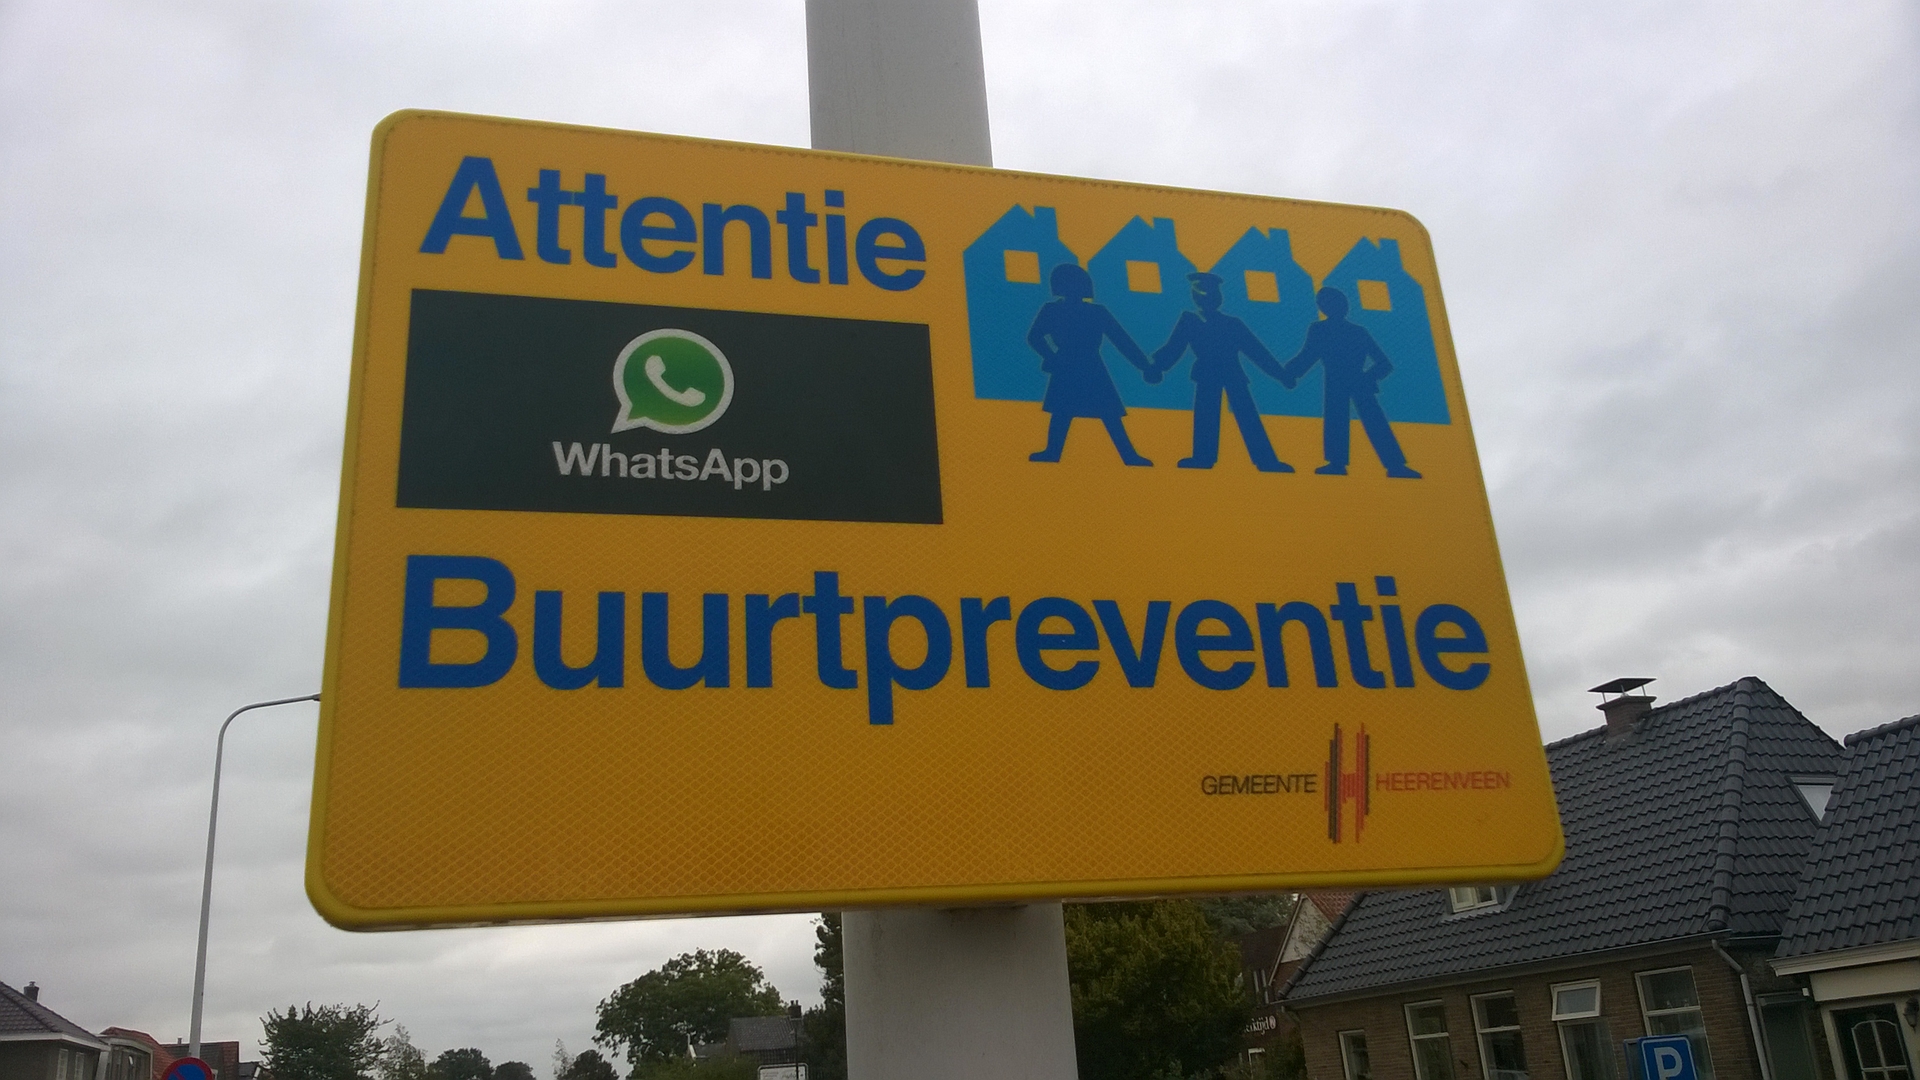 Attentie_WhatsApp_Buurtpreventie_sign,_Heerenveen_(2018)